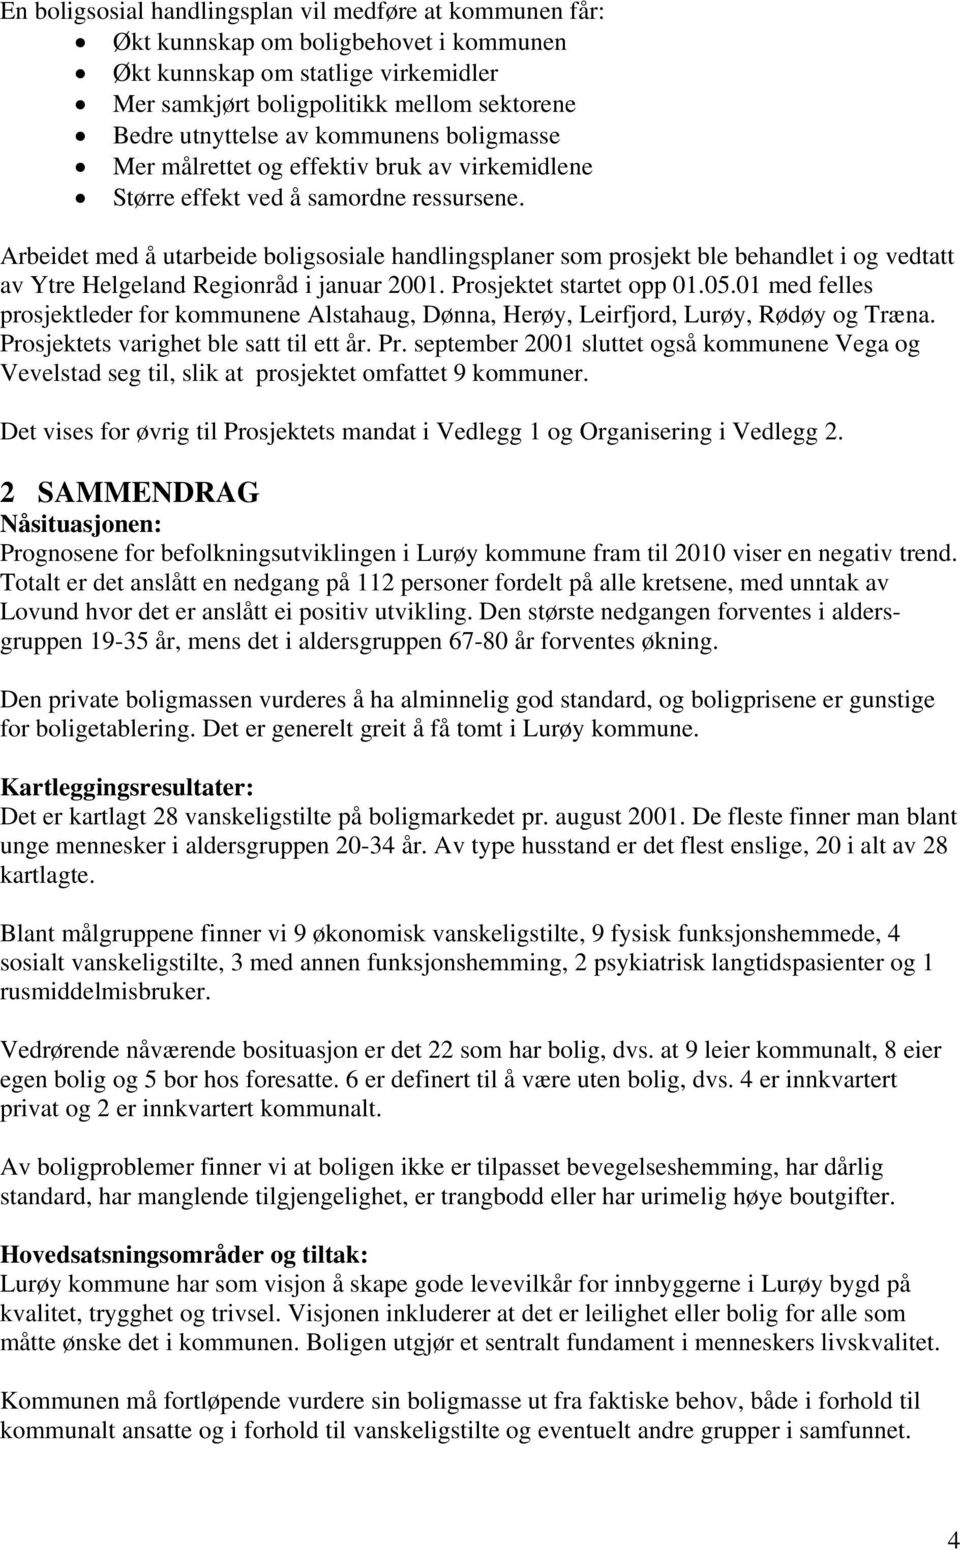 Arbeidet med å utarbeide boligsosiale handlingsplaner som prosjekt ble behandlet i og vedtatt av Ytre Helgeland Regionråd i januar 2001. Prosjektet startet opp 01.05.